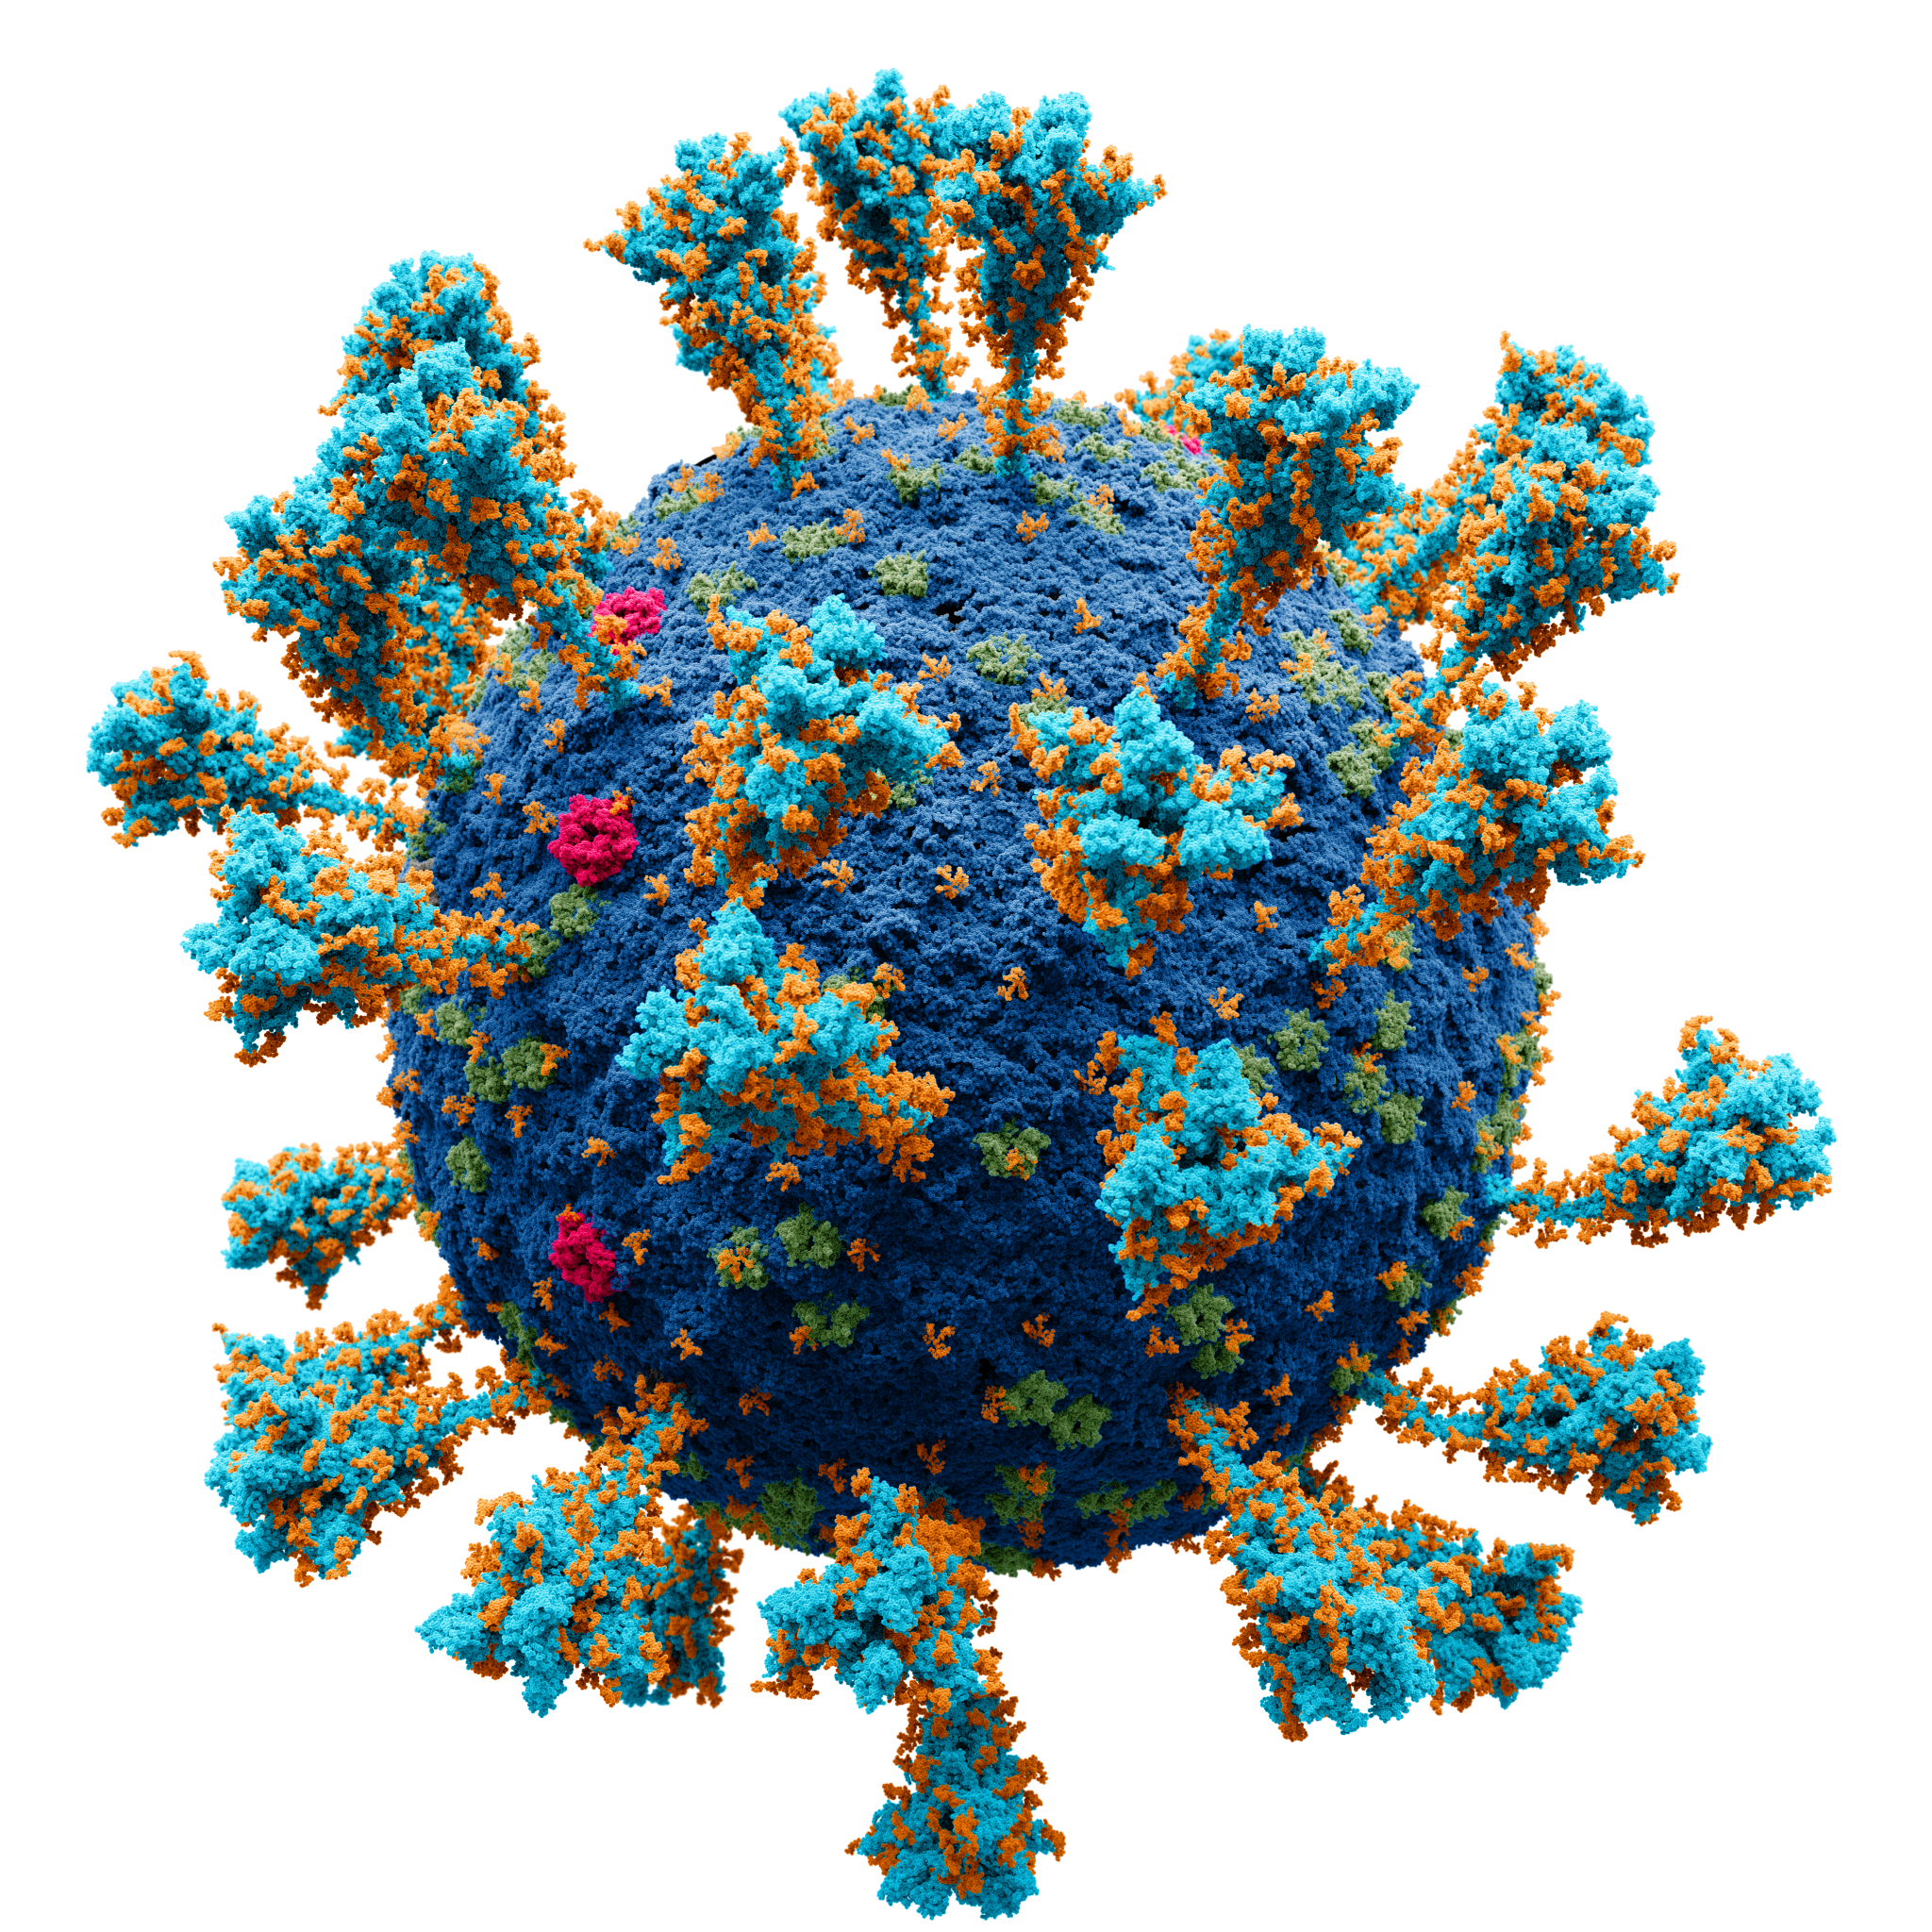 Modèle atomique de la structure externe du SARS-CoV-2, coronavirus à l'origine du COVID-19. Les sucres attachés aux protéines virales apparaissent en orange